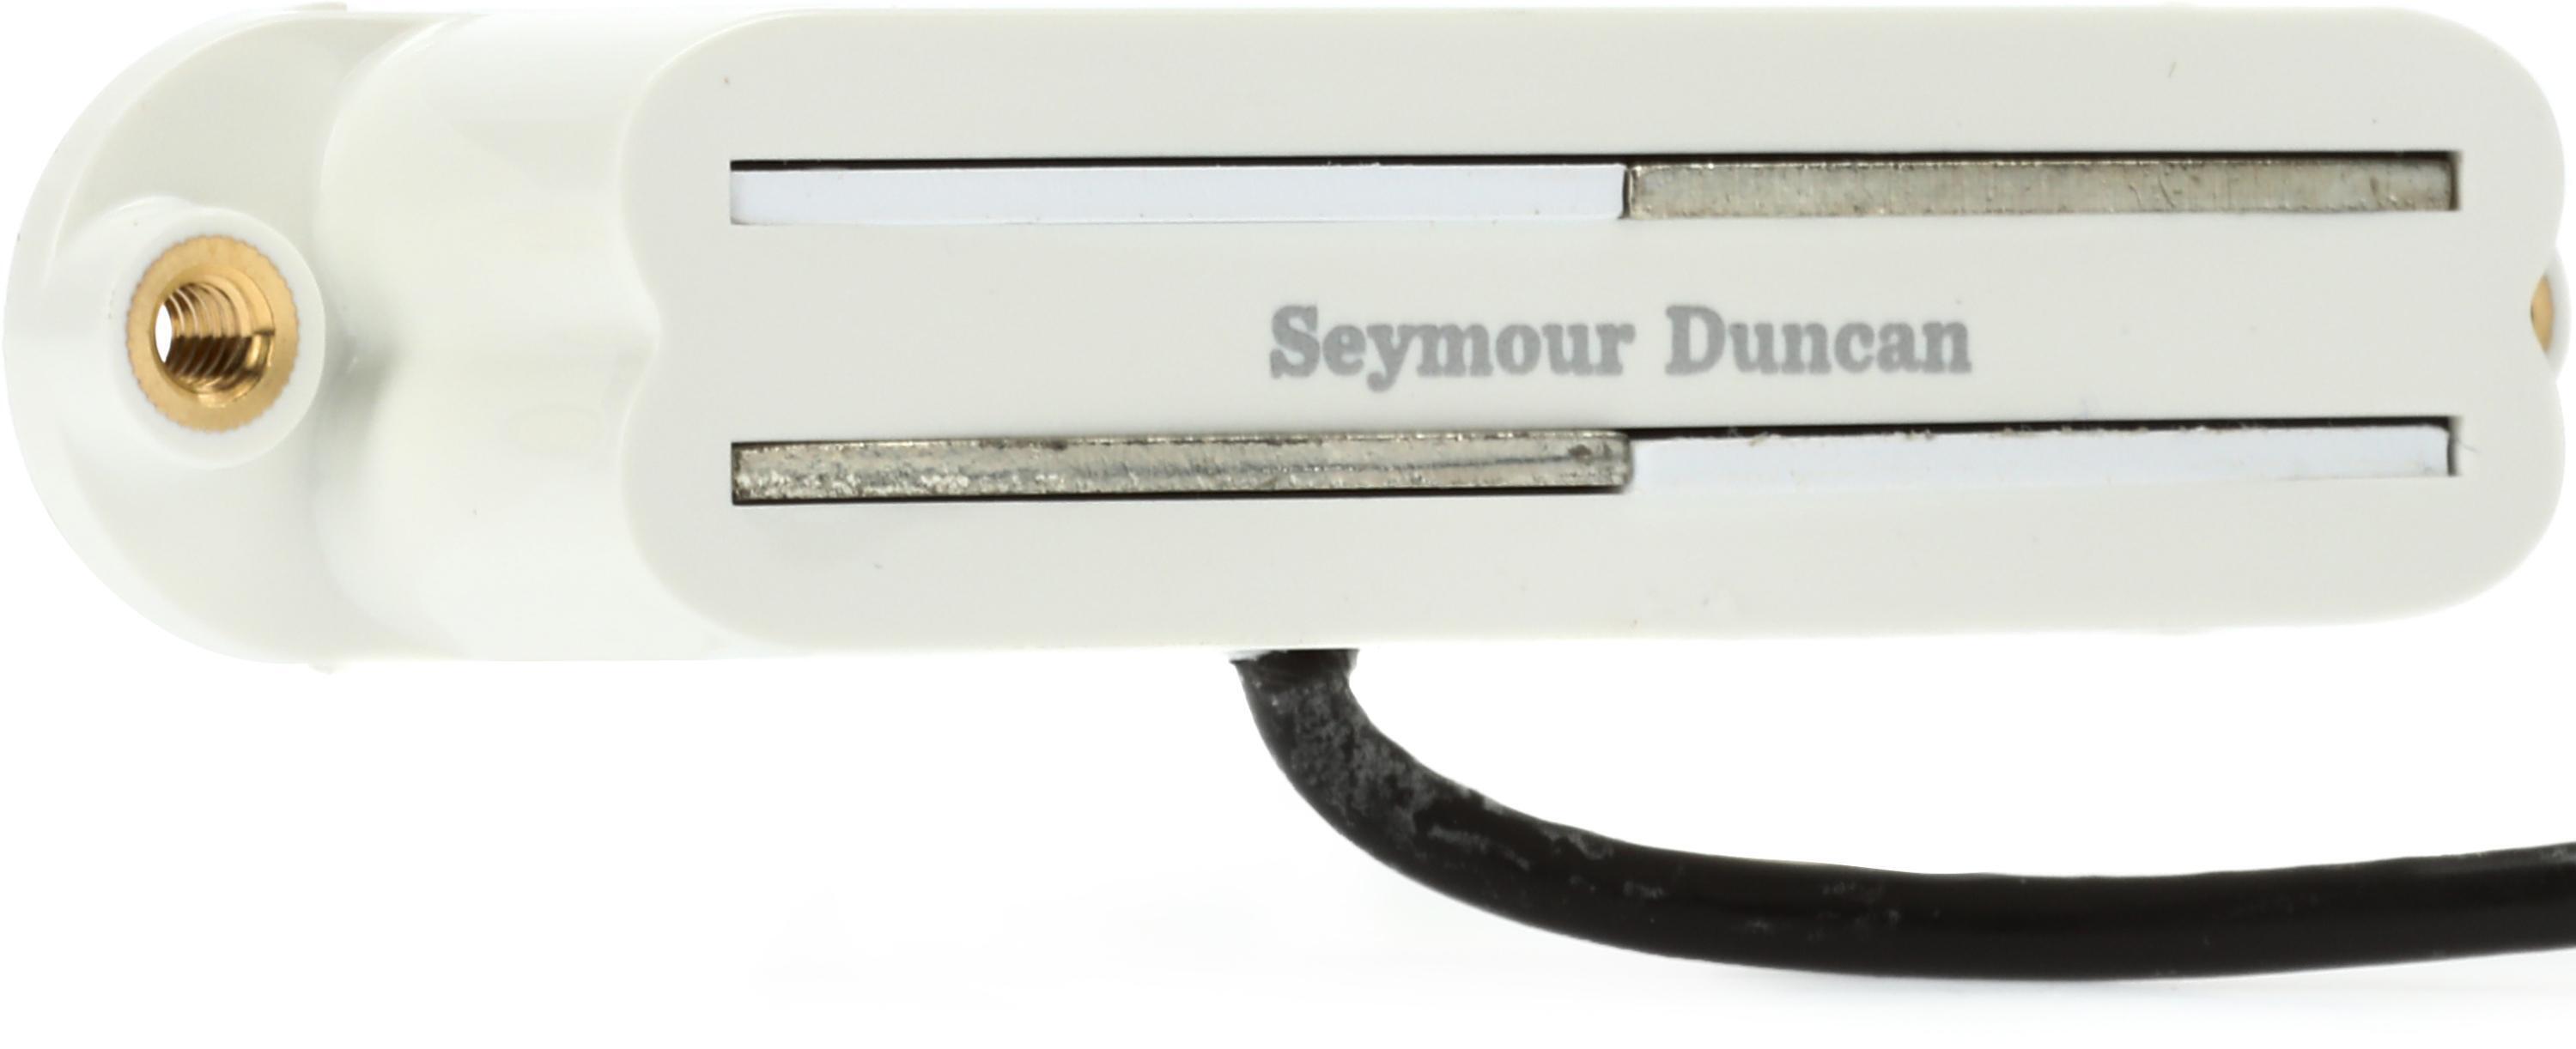 Seymour Duncan SVR-1n Vintage Rails Neck Strat Single Coil Pickup - White